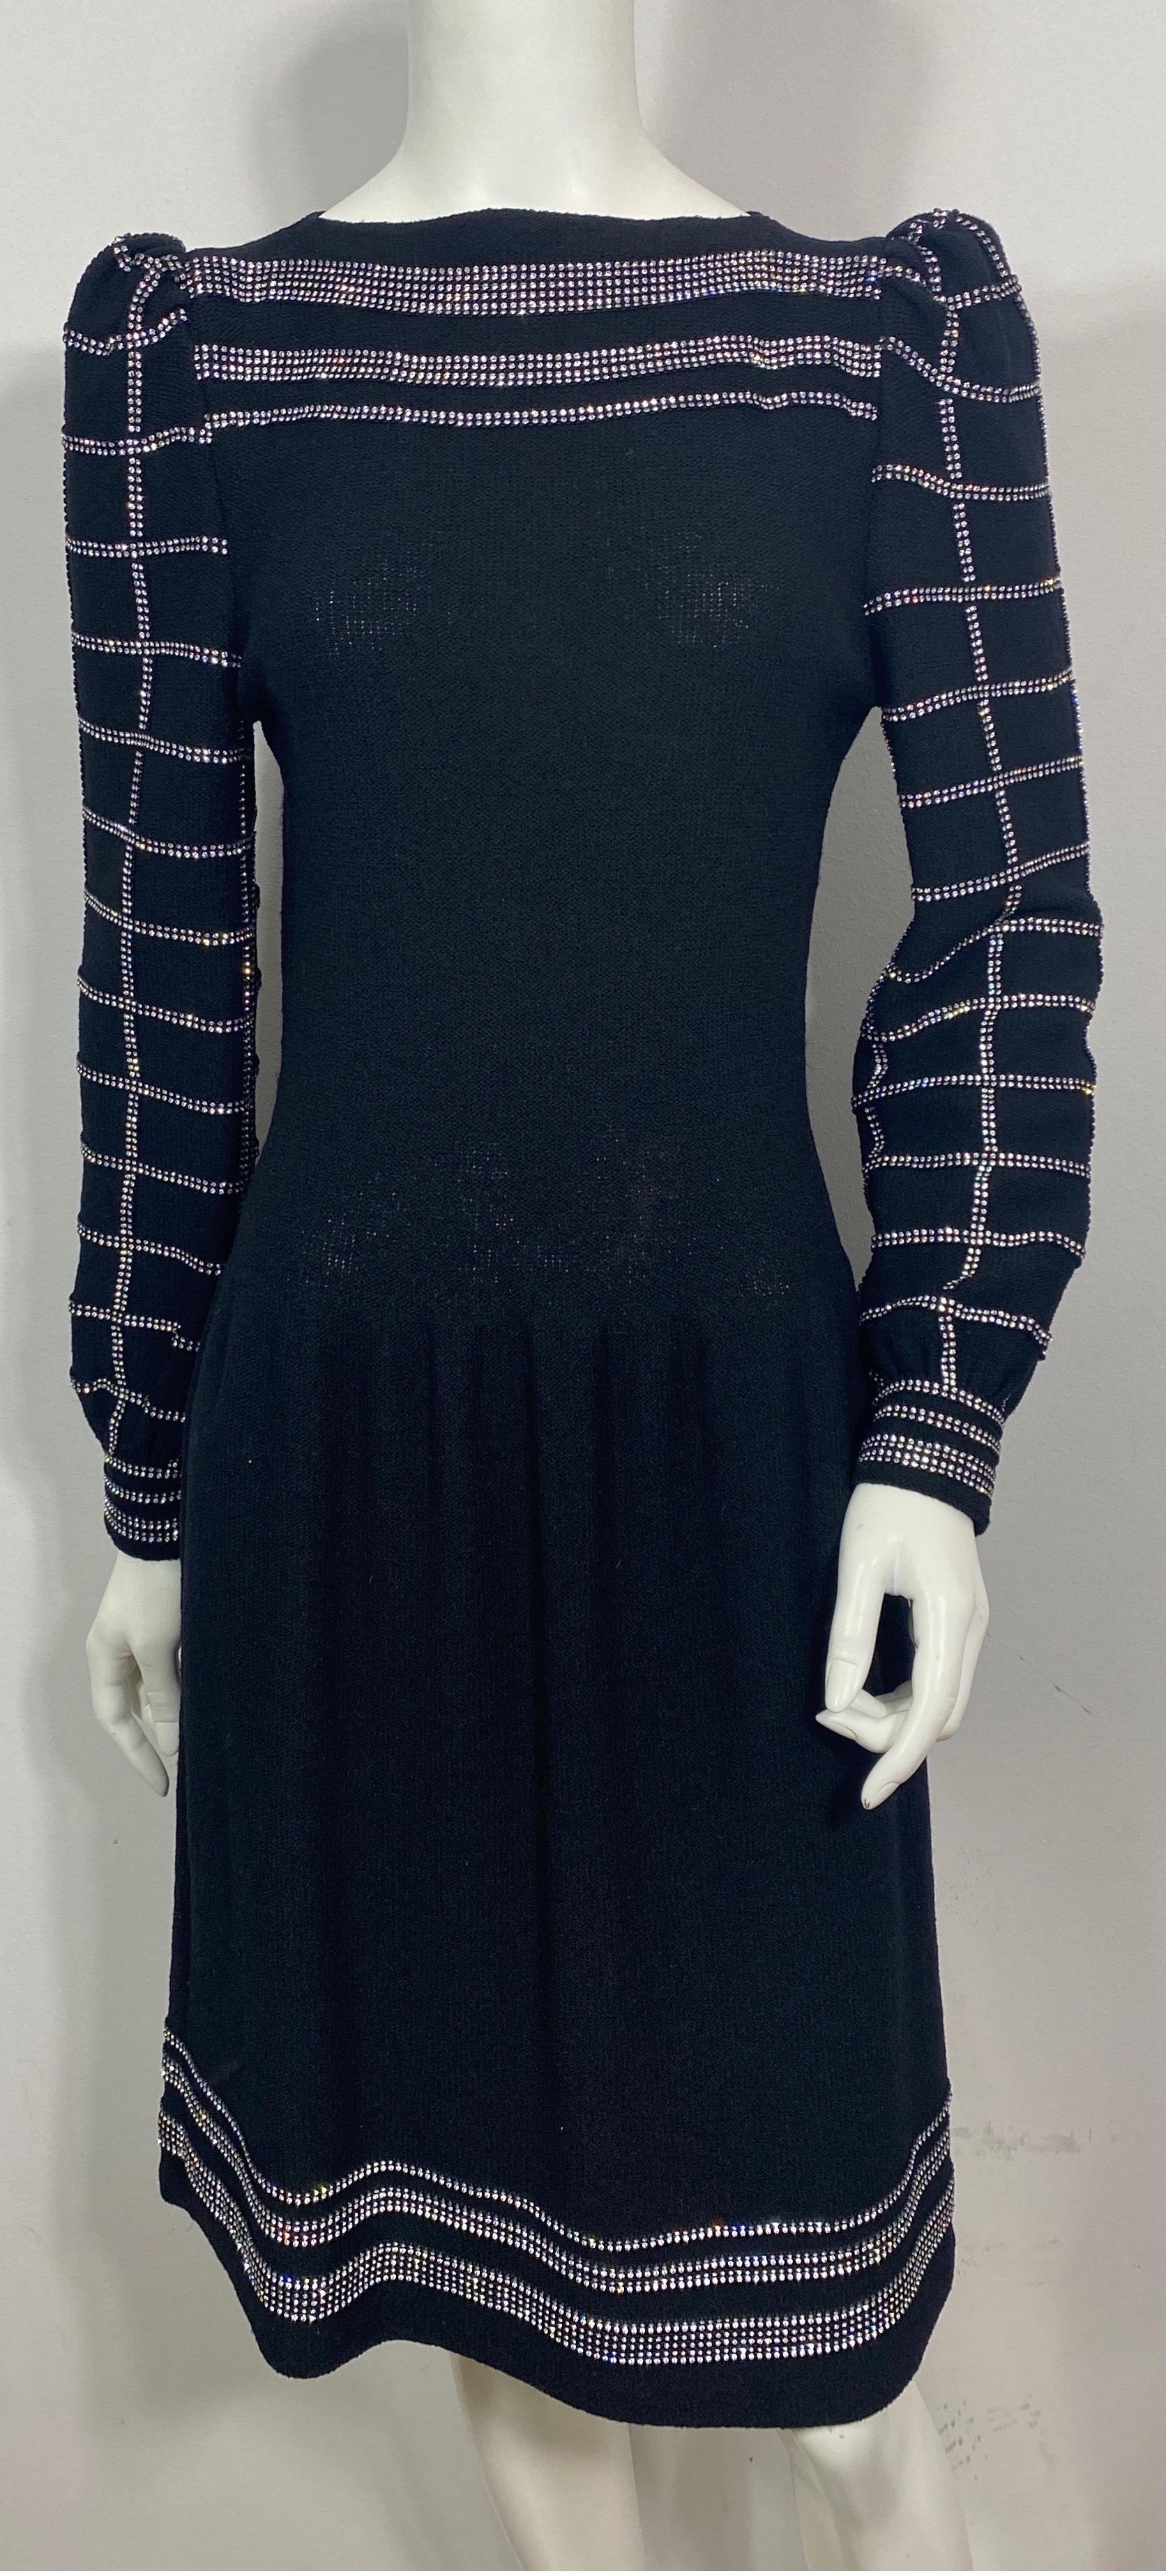 Adolfo 1980's Black Wool Knit Rhinestone Embellished Dress- Size 6  Cette fantastique création d'Adolfo datant des années 1980 est en maille de laine noire, avec une encolure bateau et 12 rangées de strass horizontaux sur le devant, le bas de la